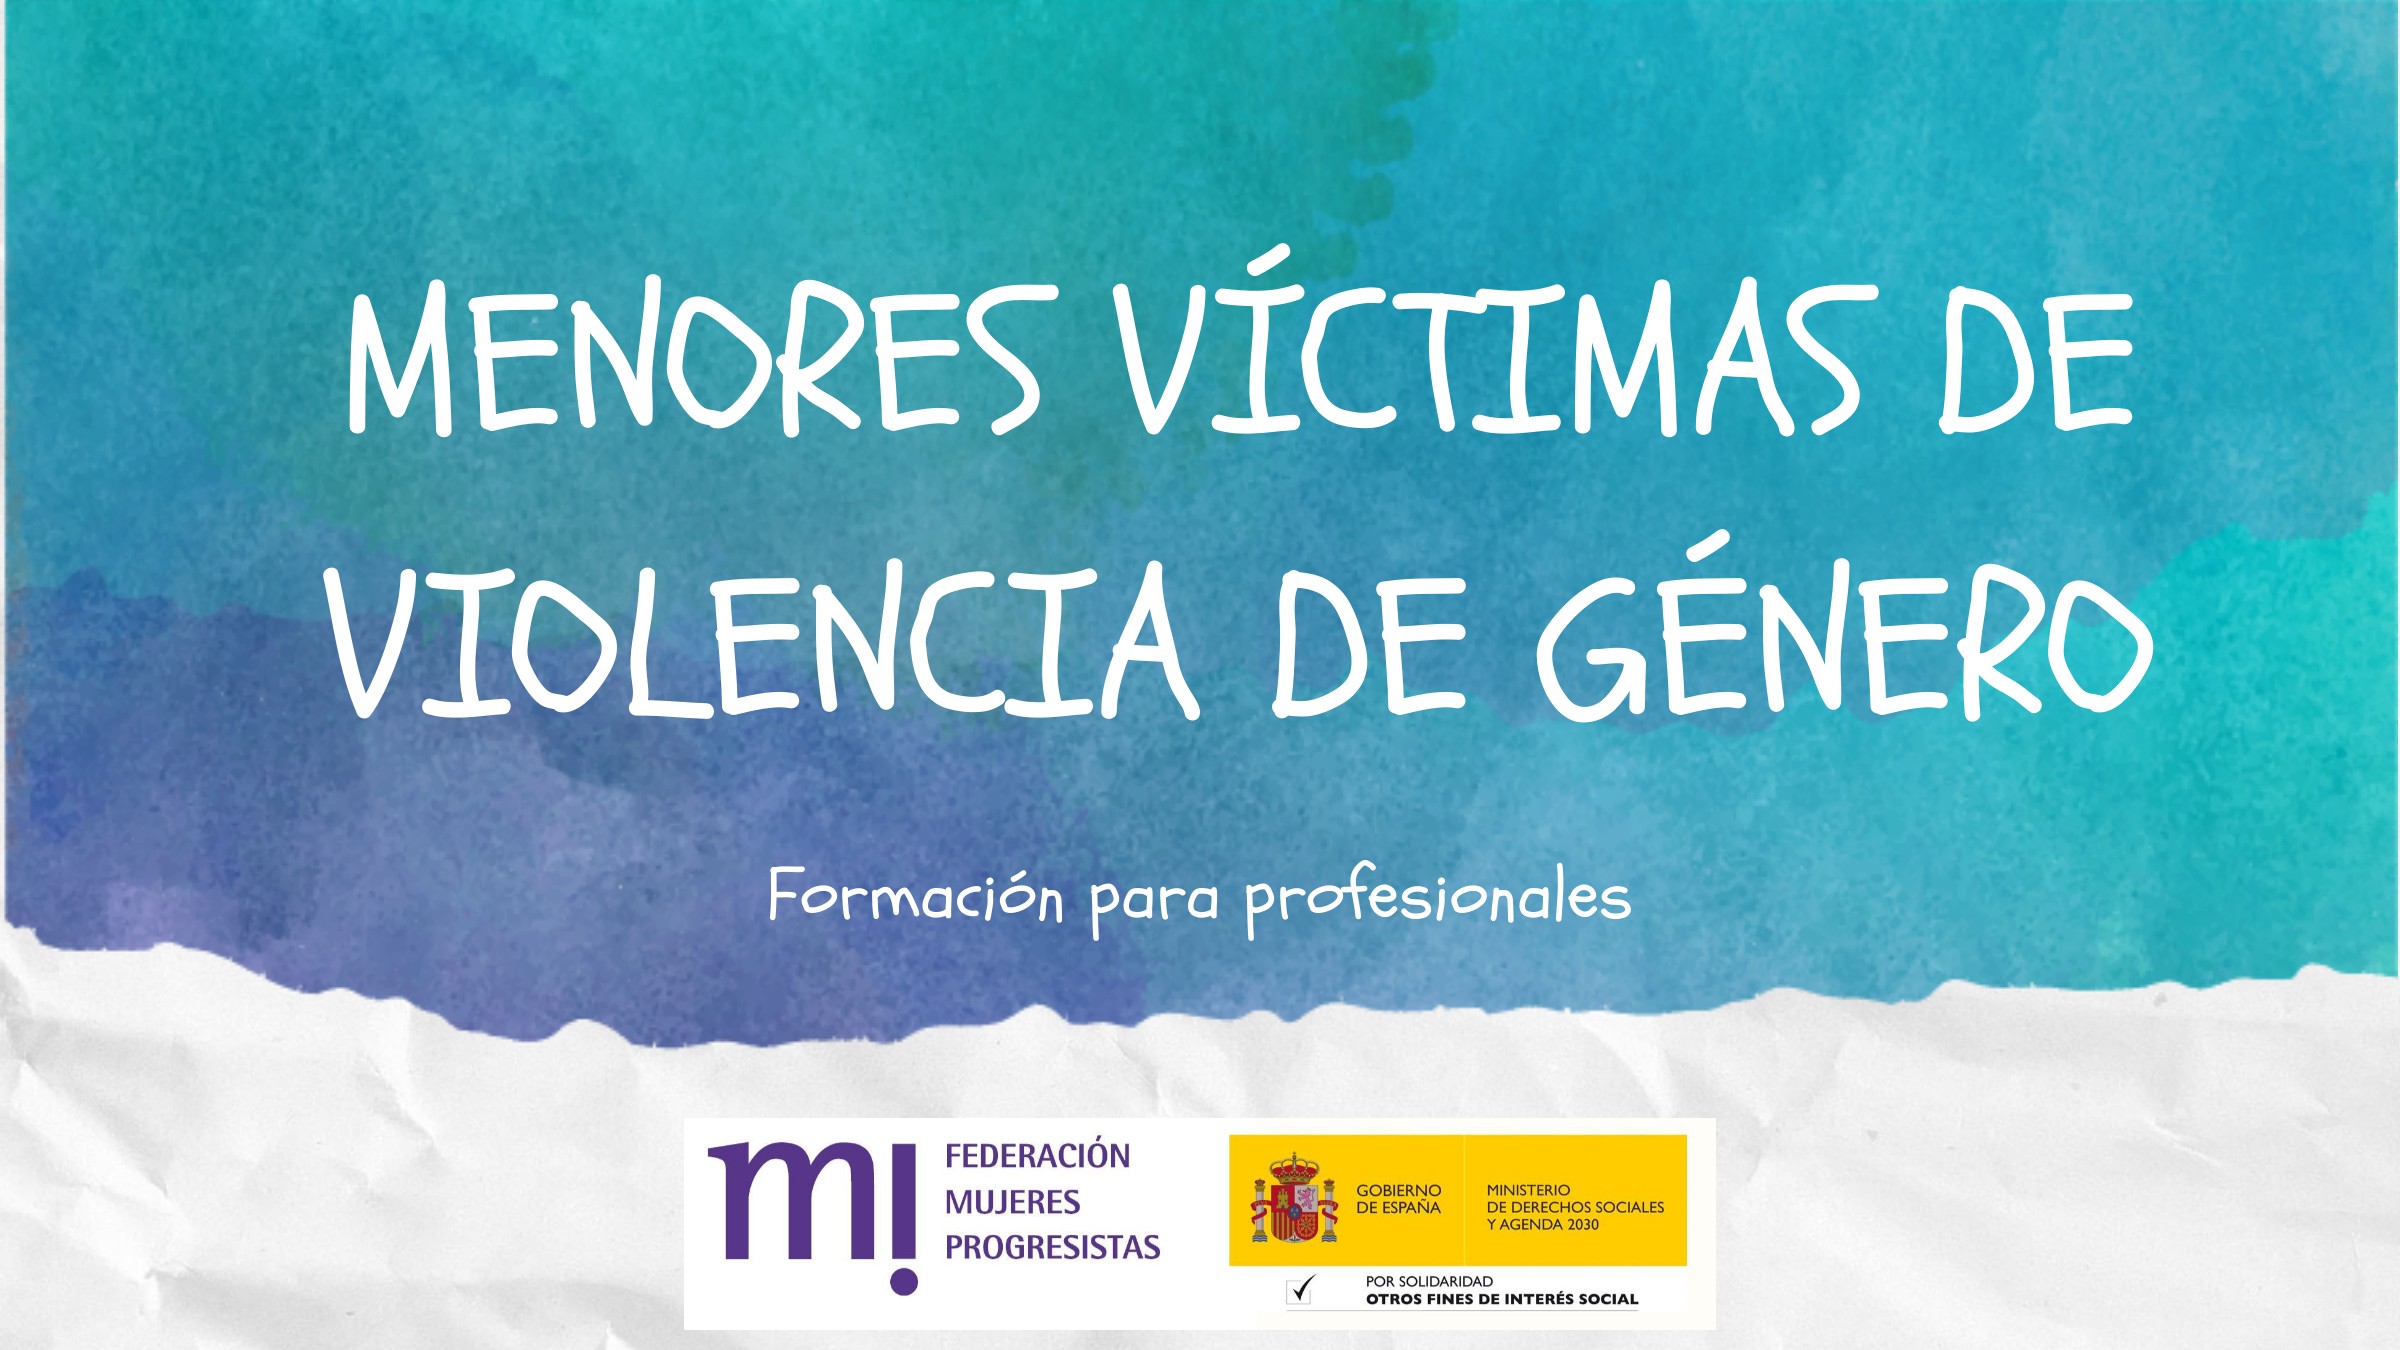 Course Image 9ª edición: Menores víctimas de violencia de género